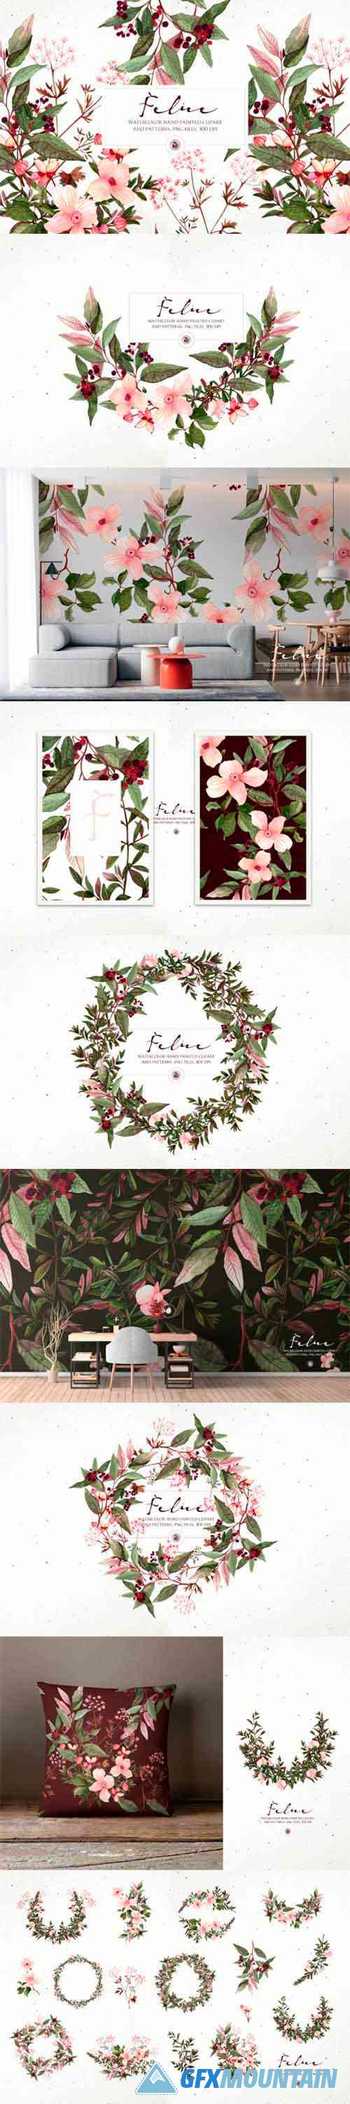 Felice - watercolor floral set